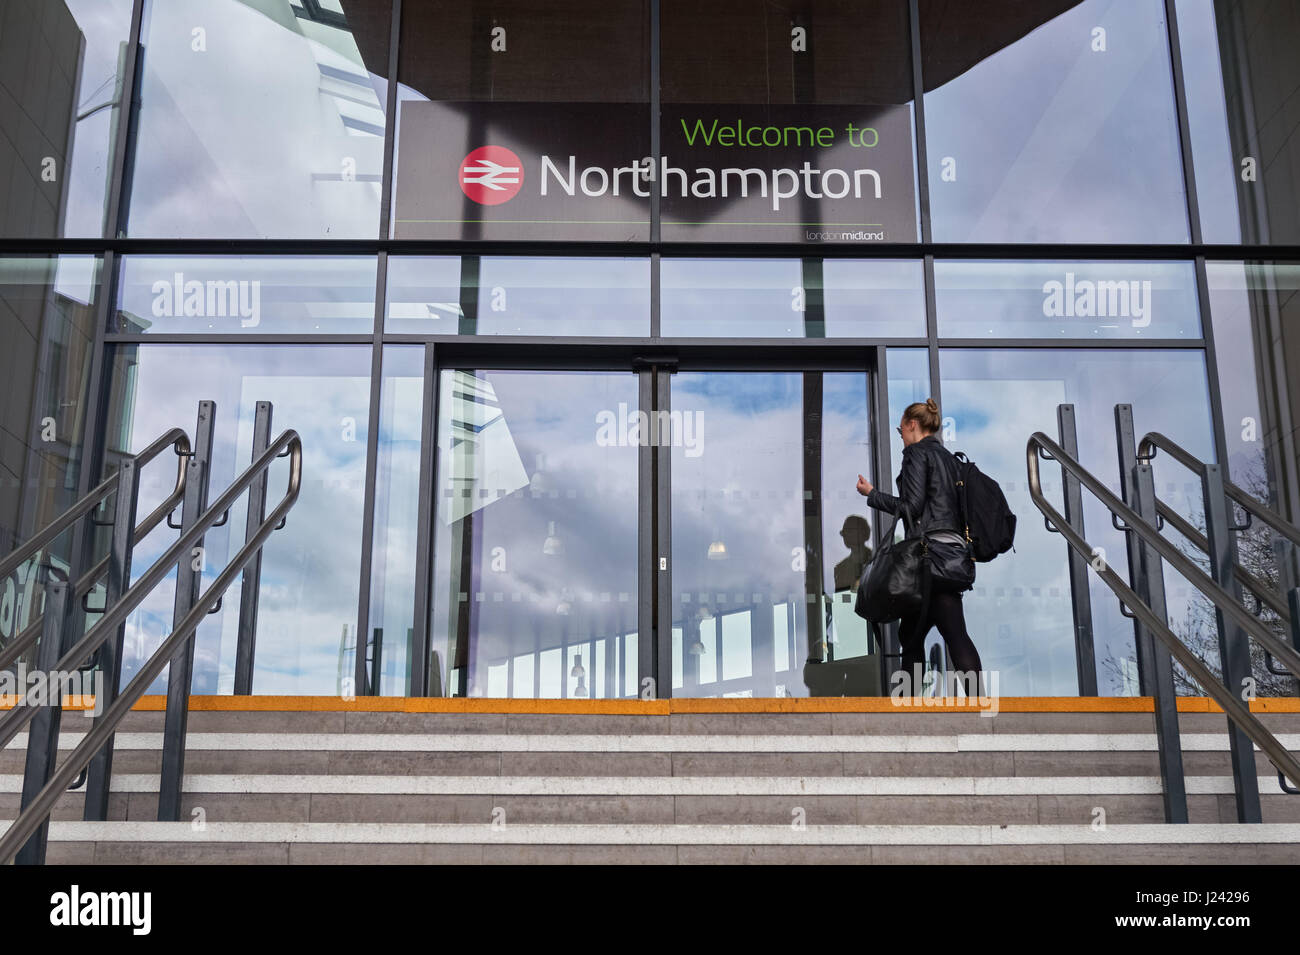 Entrée de la gare de Northampton, Angleterre Royaume-Uni UK Banque D'Images